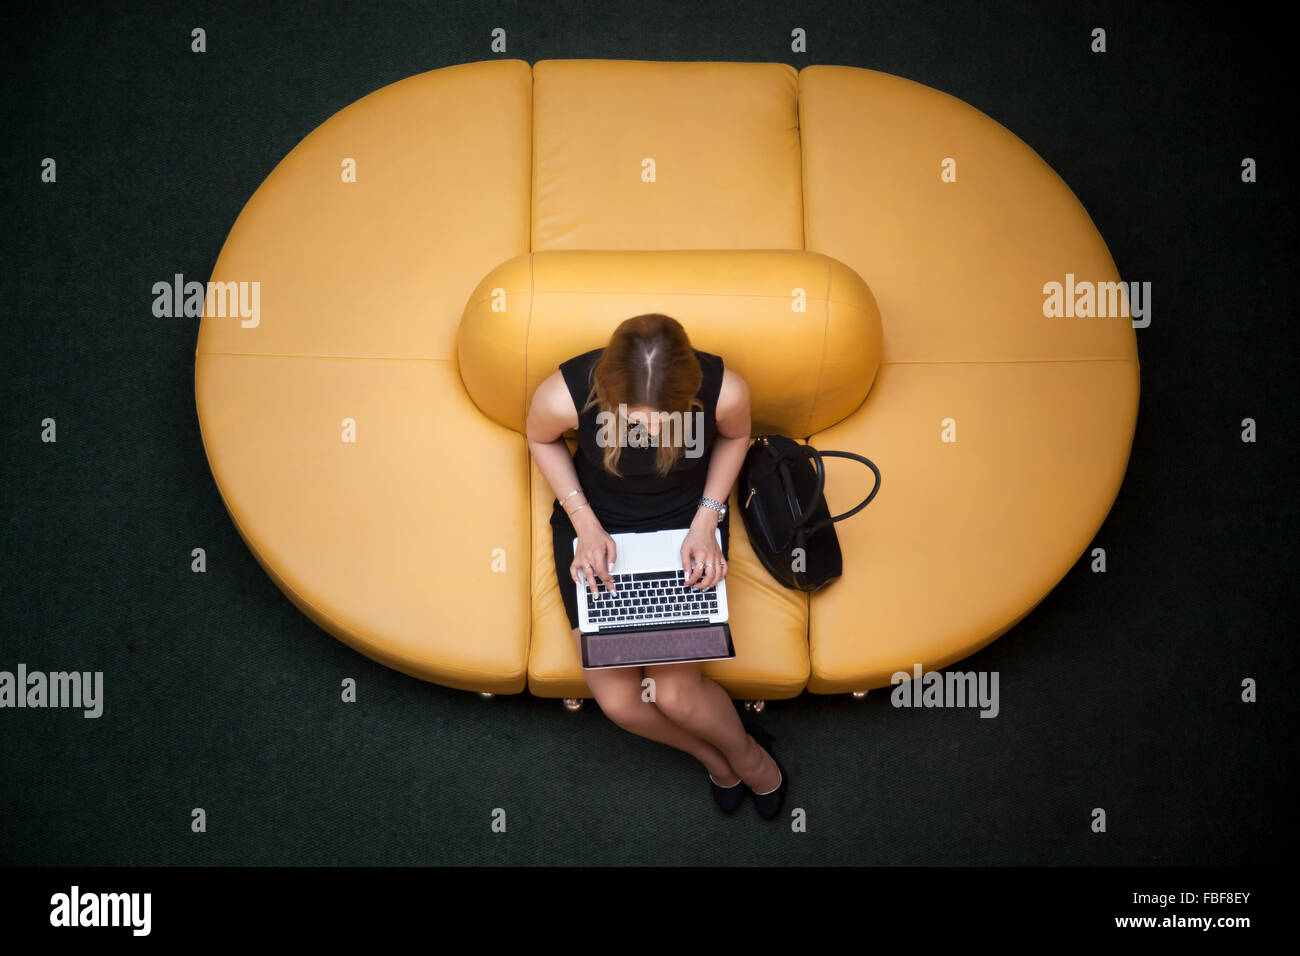 Jeune femme assise sur yellow coach working on laptop in public zone wifi, dactylographie, vue du dessus Banque D'Images